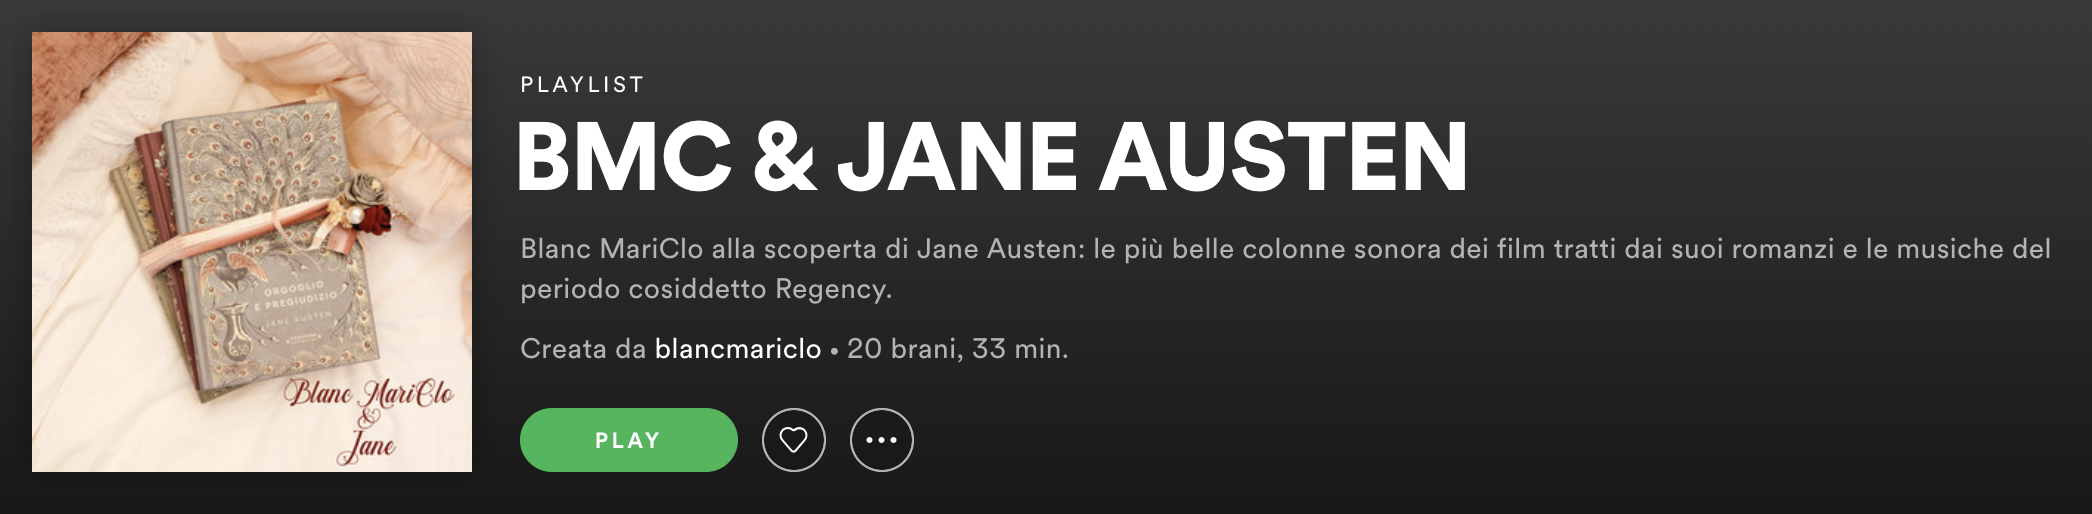 Blanc MariClo' - Jane Austen Playlist